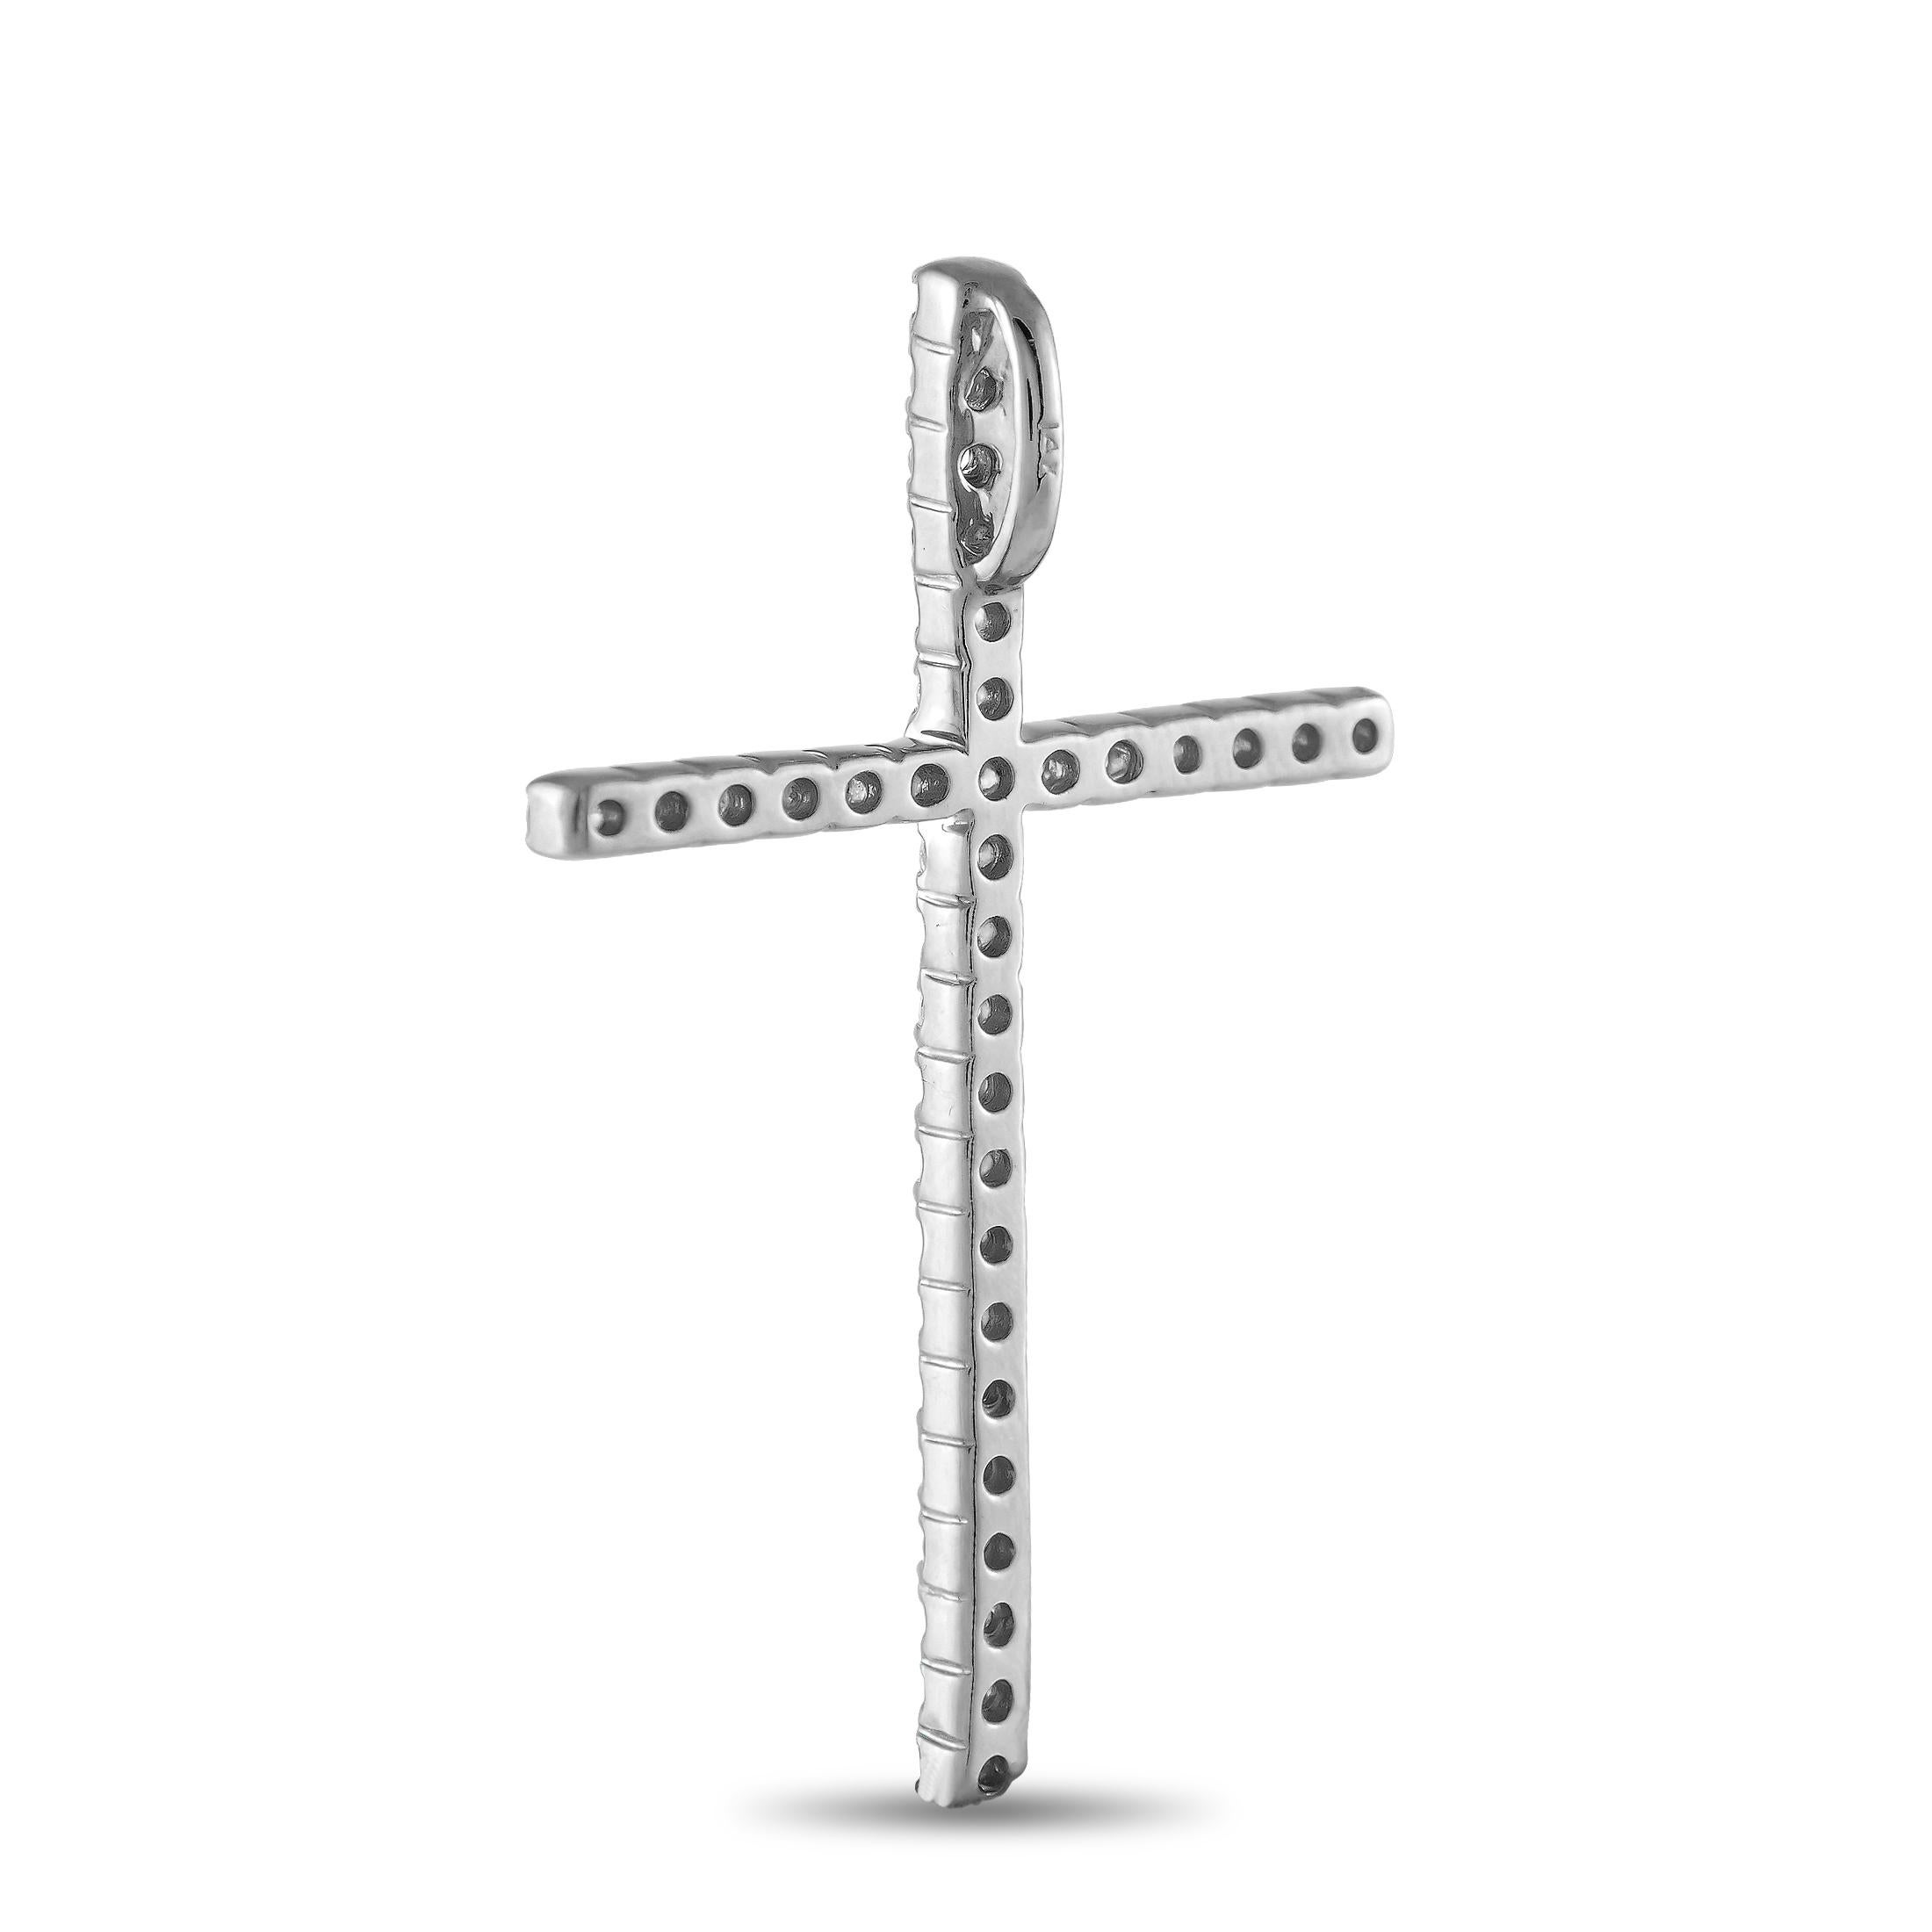 Zeigen Sie Ihren Glauben auf brillante Weise mit dieser diamantenen Kreuz-Halskette. Dieses funkelnde Symbol des Glaubens besteht aus einem 1,5 x 1,0 schlanken Kreuzanhänger, der von runden Diamanten auf gemeinsamen Zacken durchzogen ist. Dieser